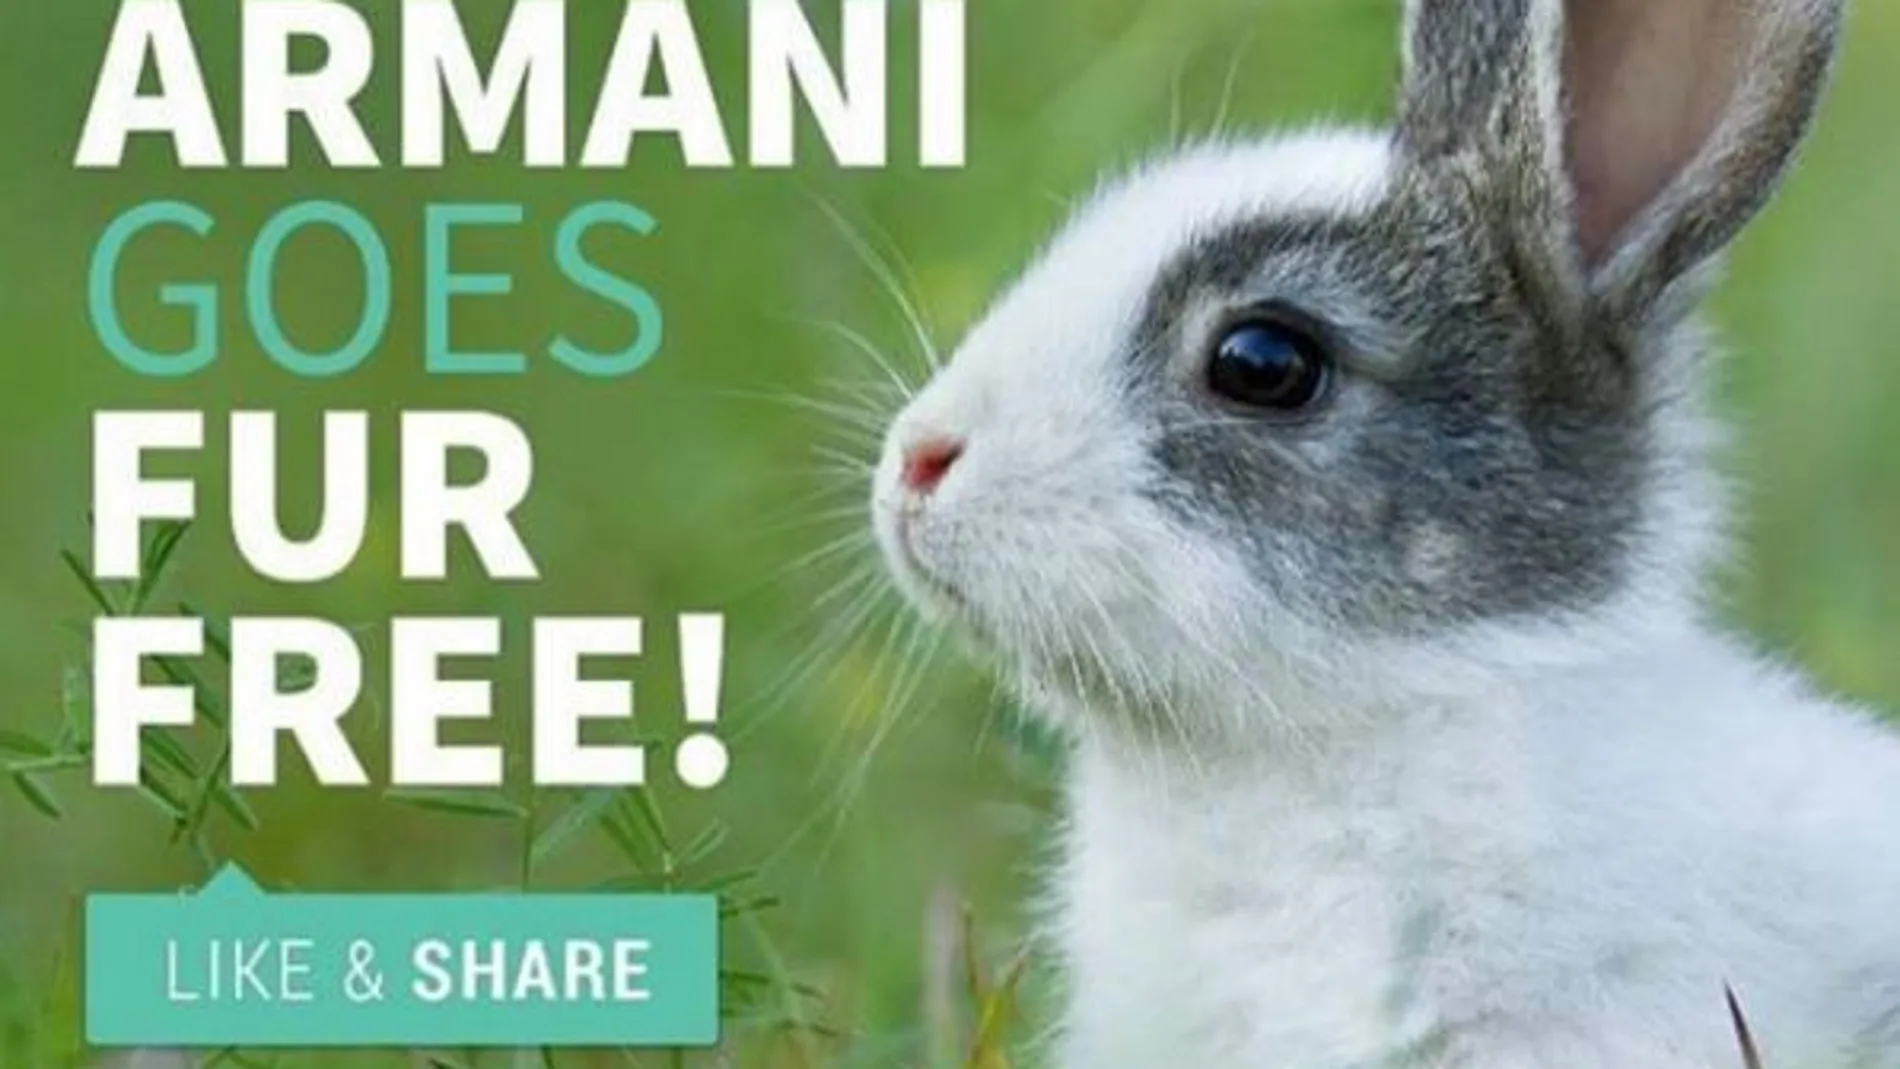 Armani dejará de usar pieles de animales